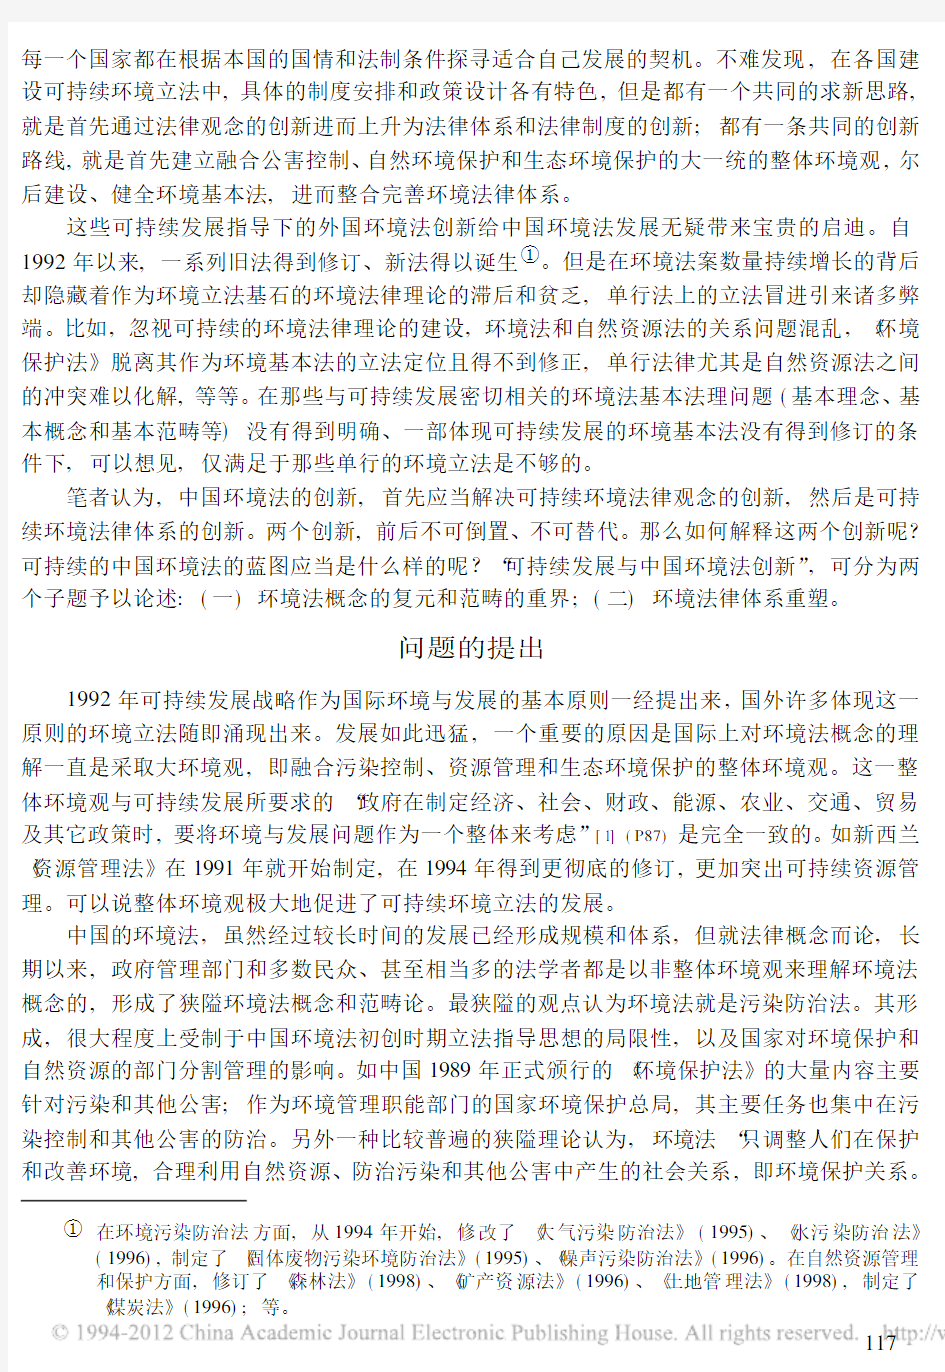 可持续发展与中国环境法创新_环境法概念的复元和范畴的重界_杜群